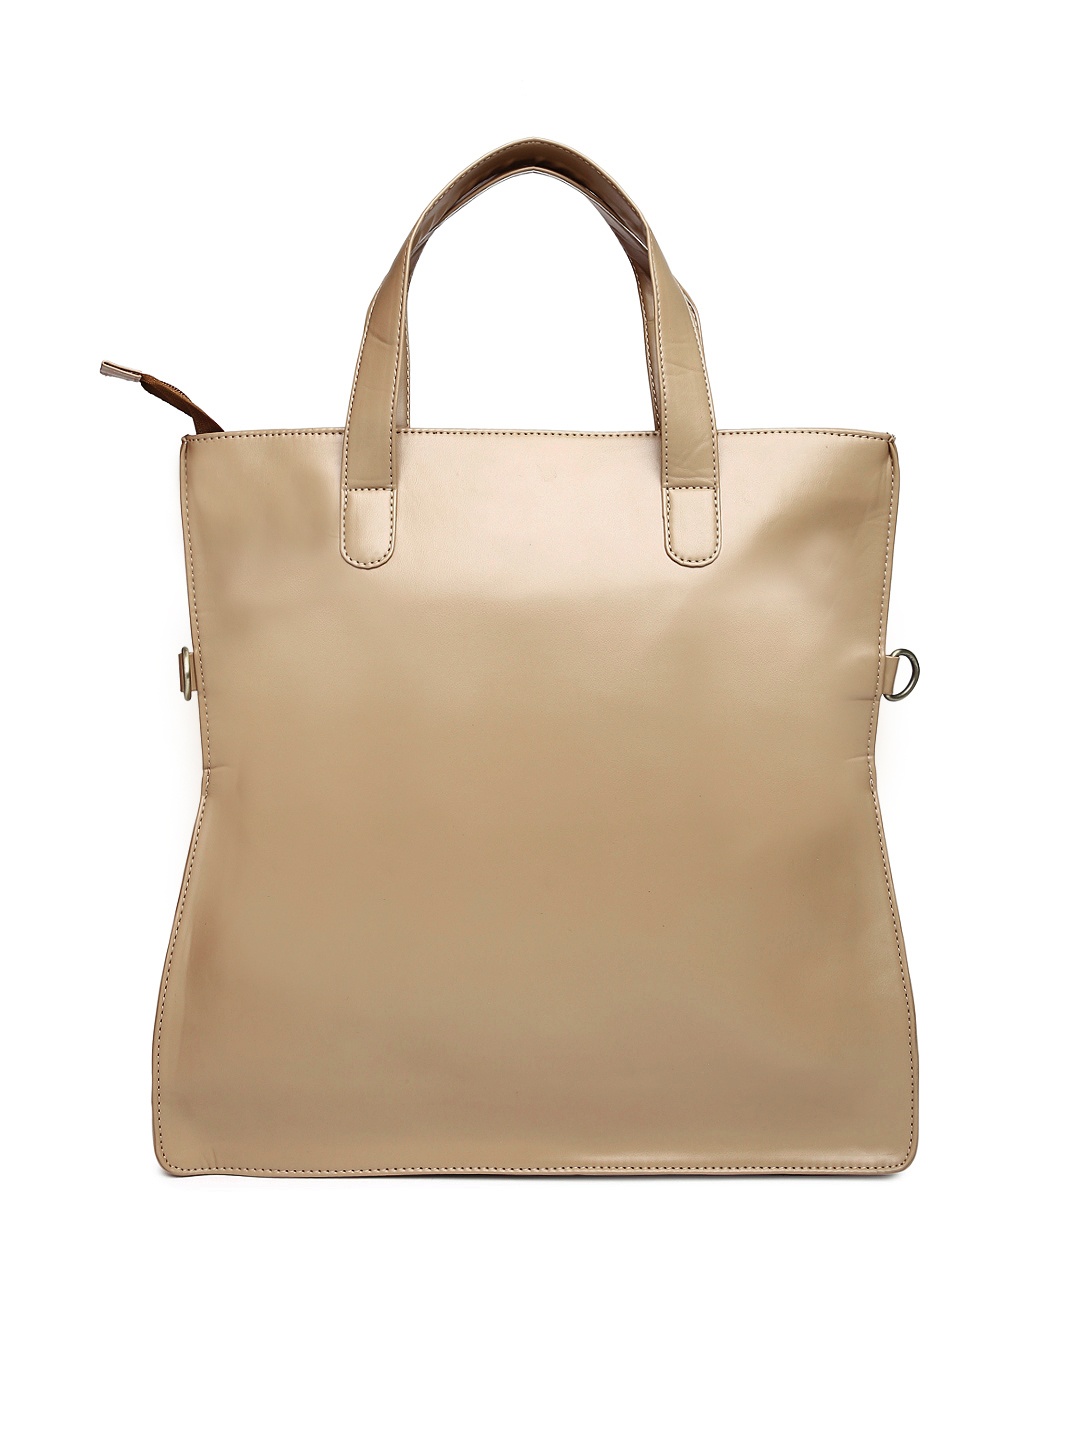 Marie Claire Handbags. Designer Handbag Cakes.